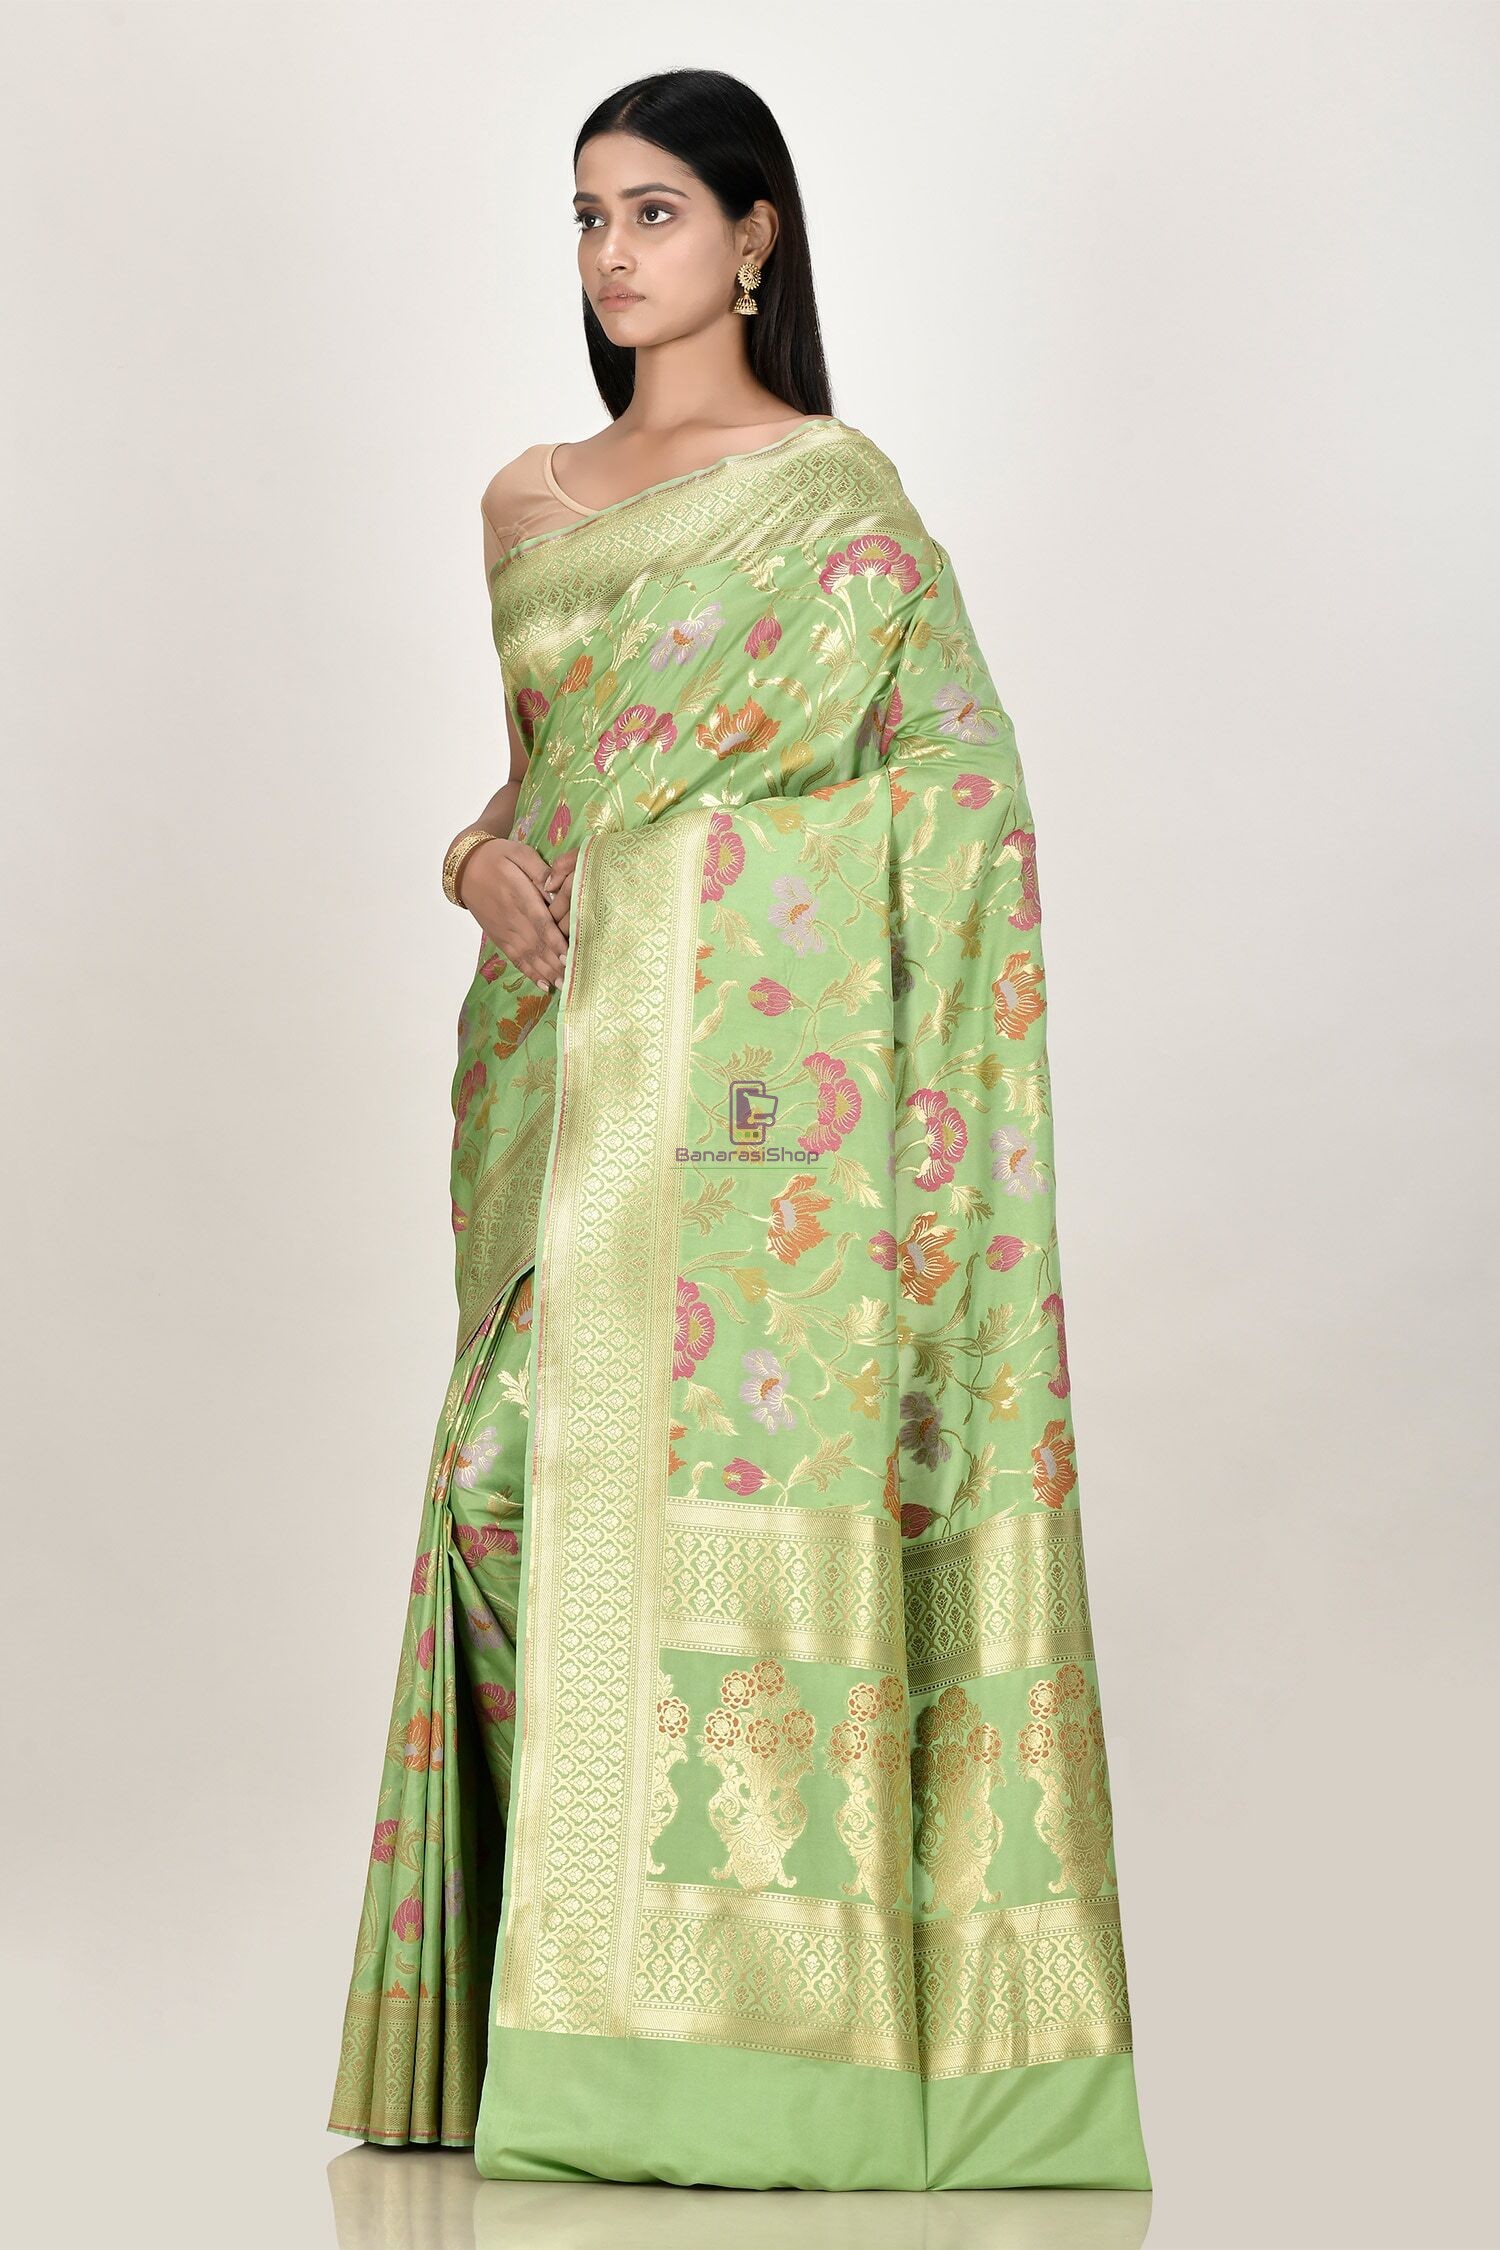 Banarasi Silk Sarees Online And Pure Silk Saree At 50% Off